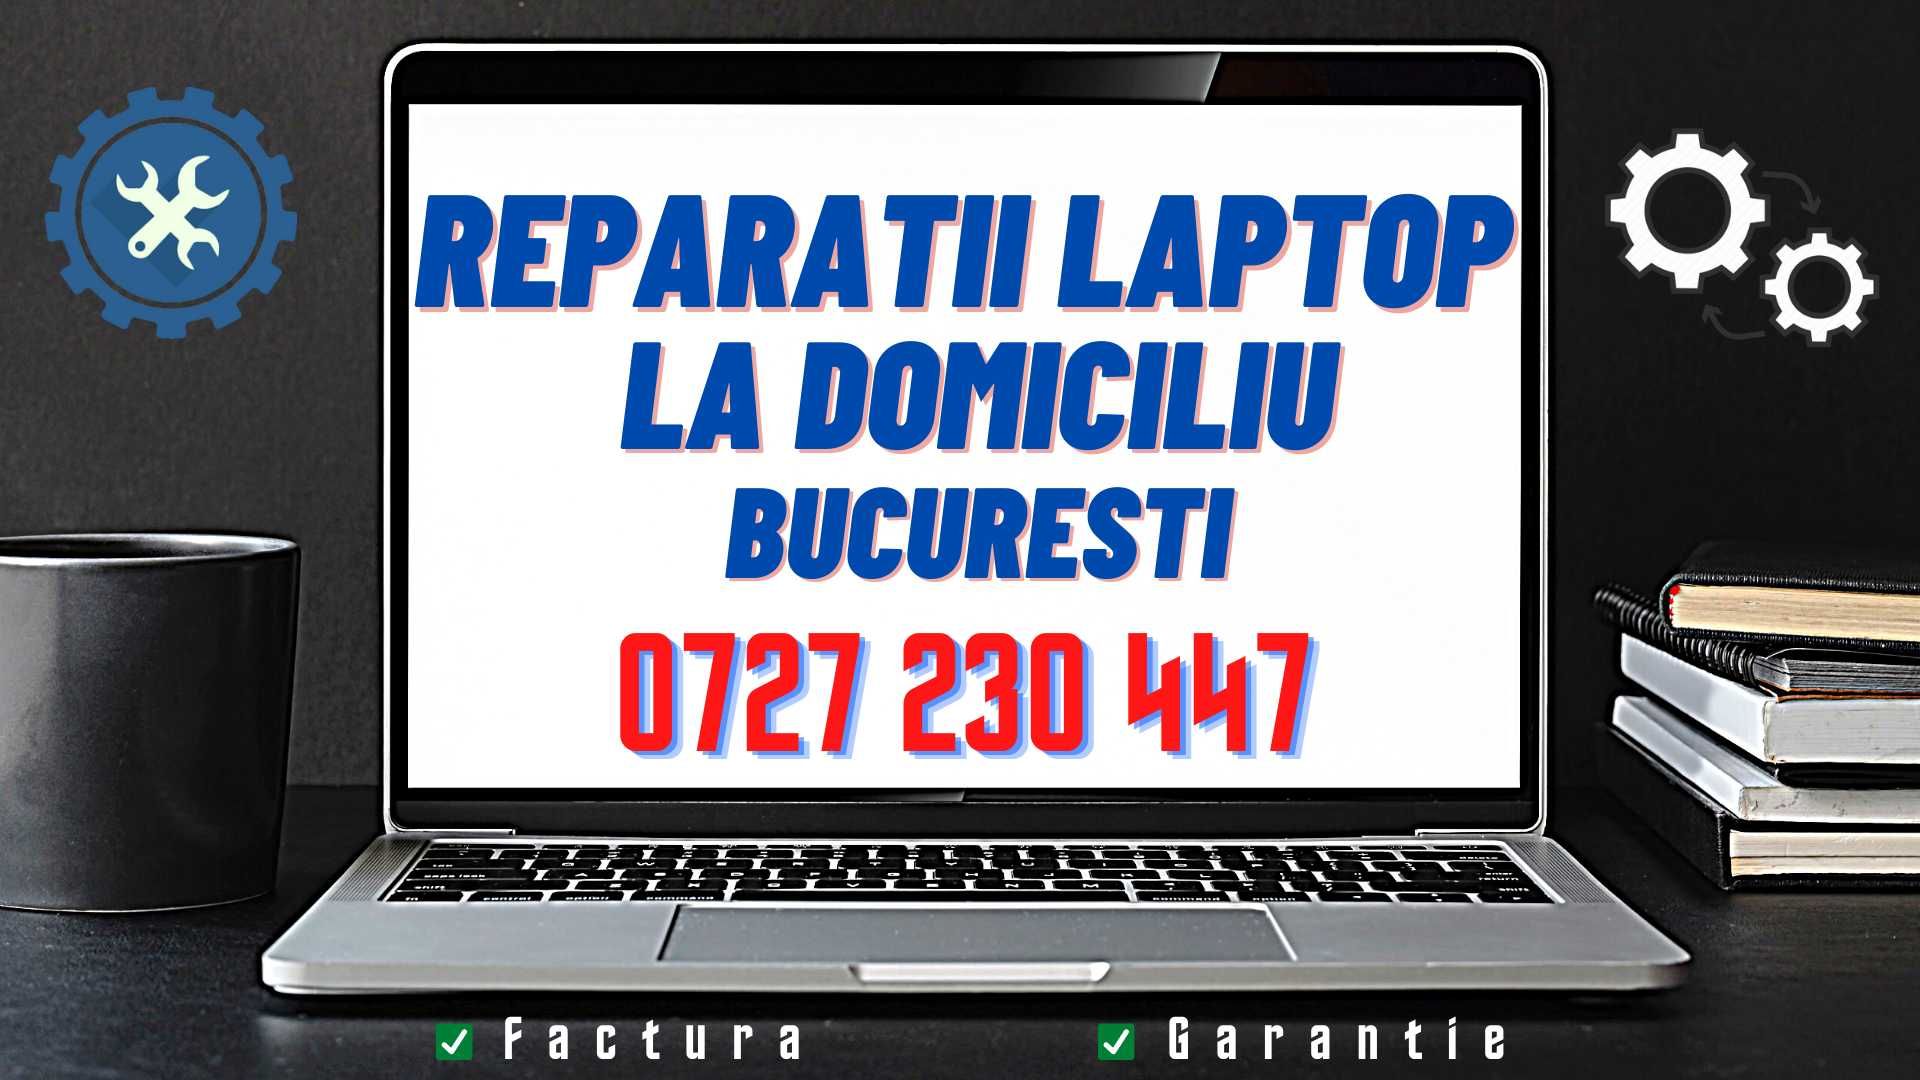 Windows 10/11 - Service Laptop/PC- Curatare Laptop - LA DOMICILIU